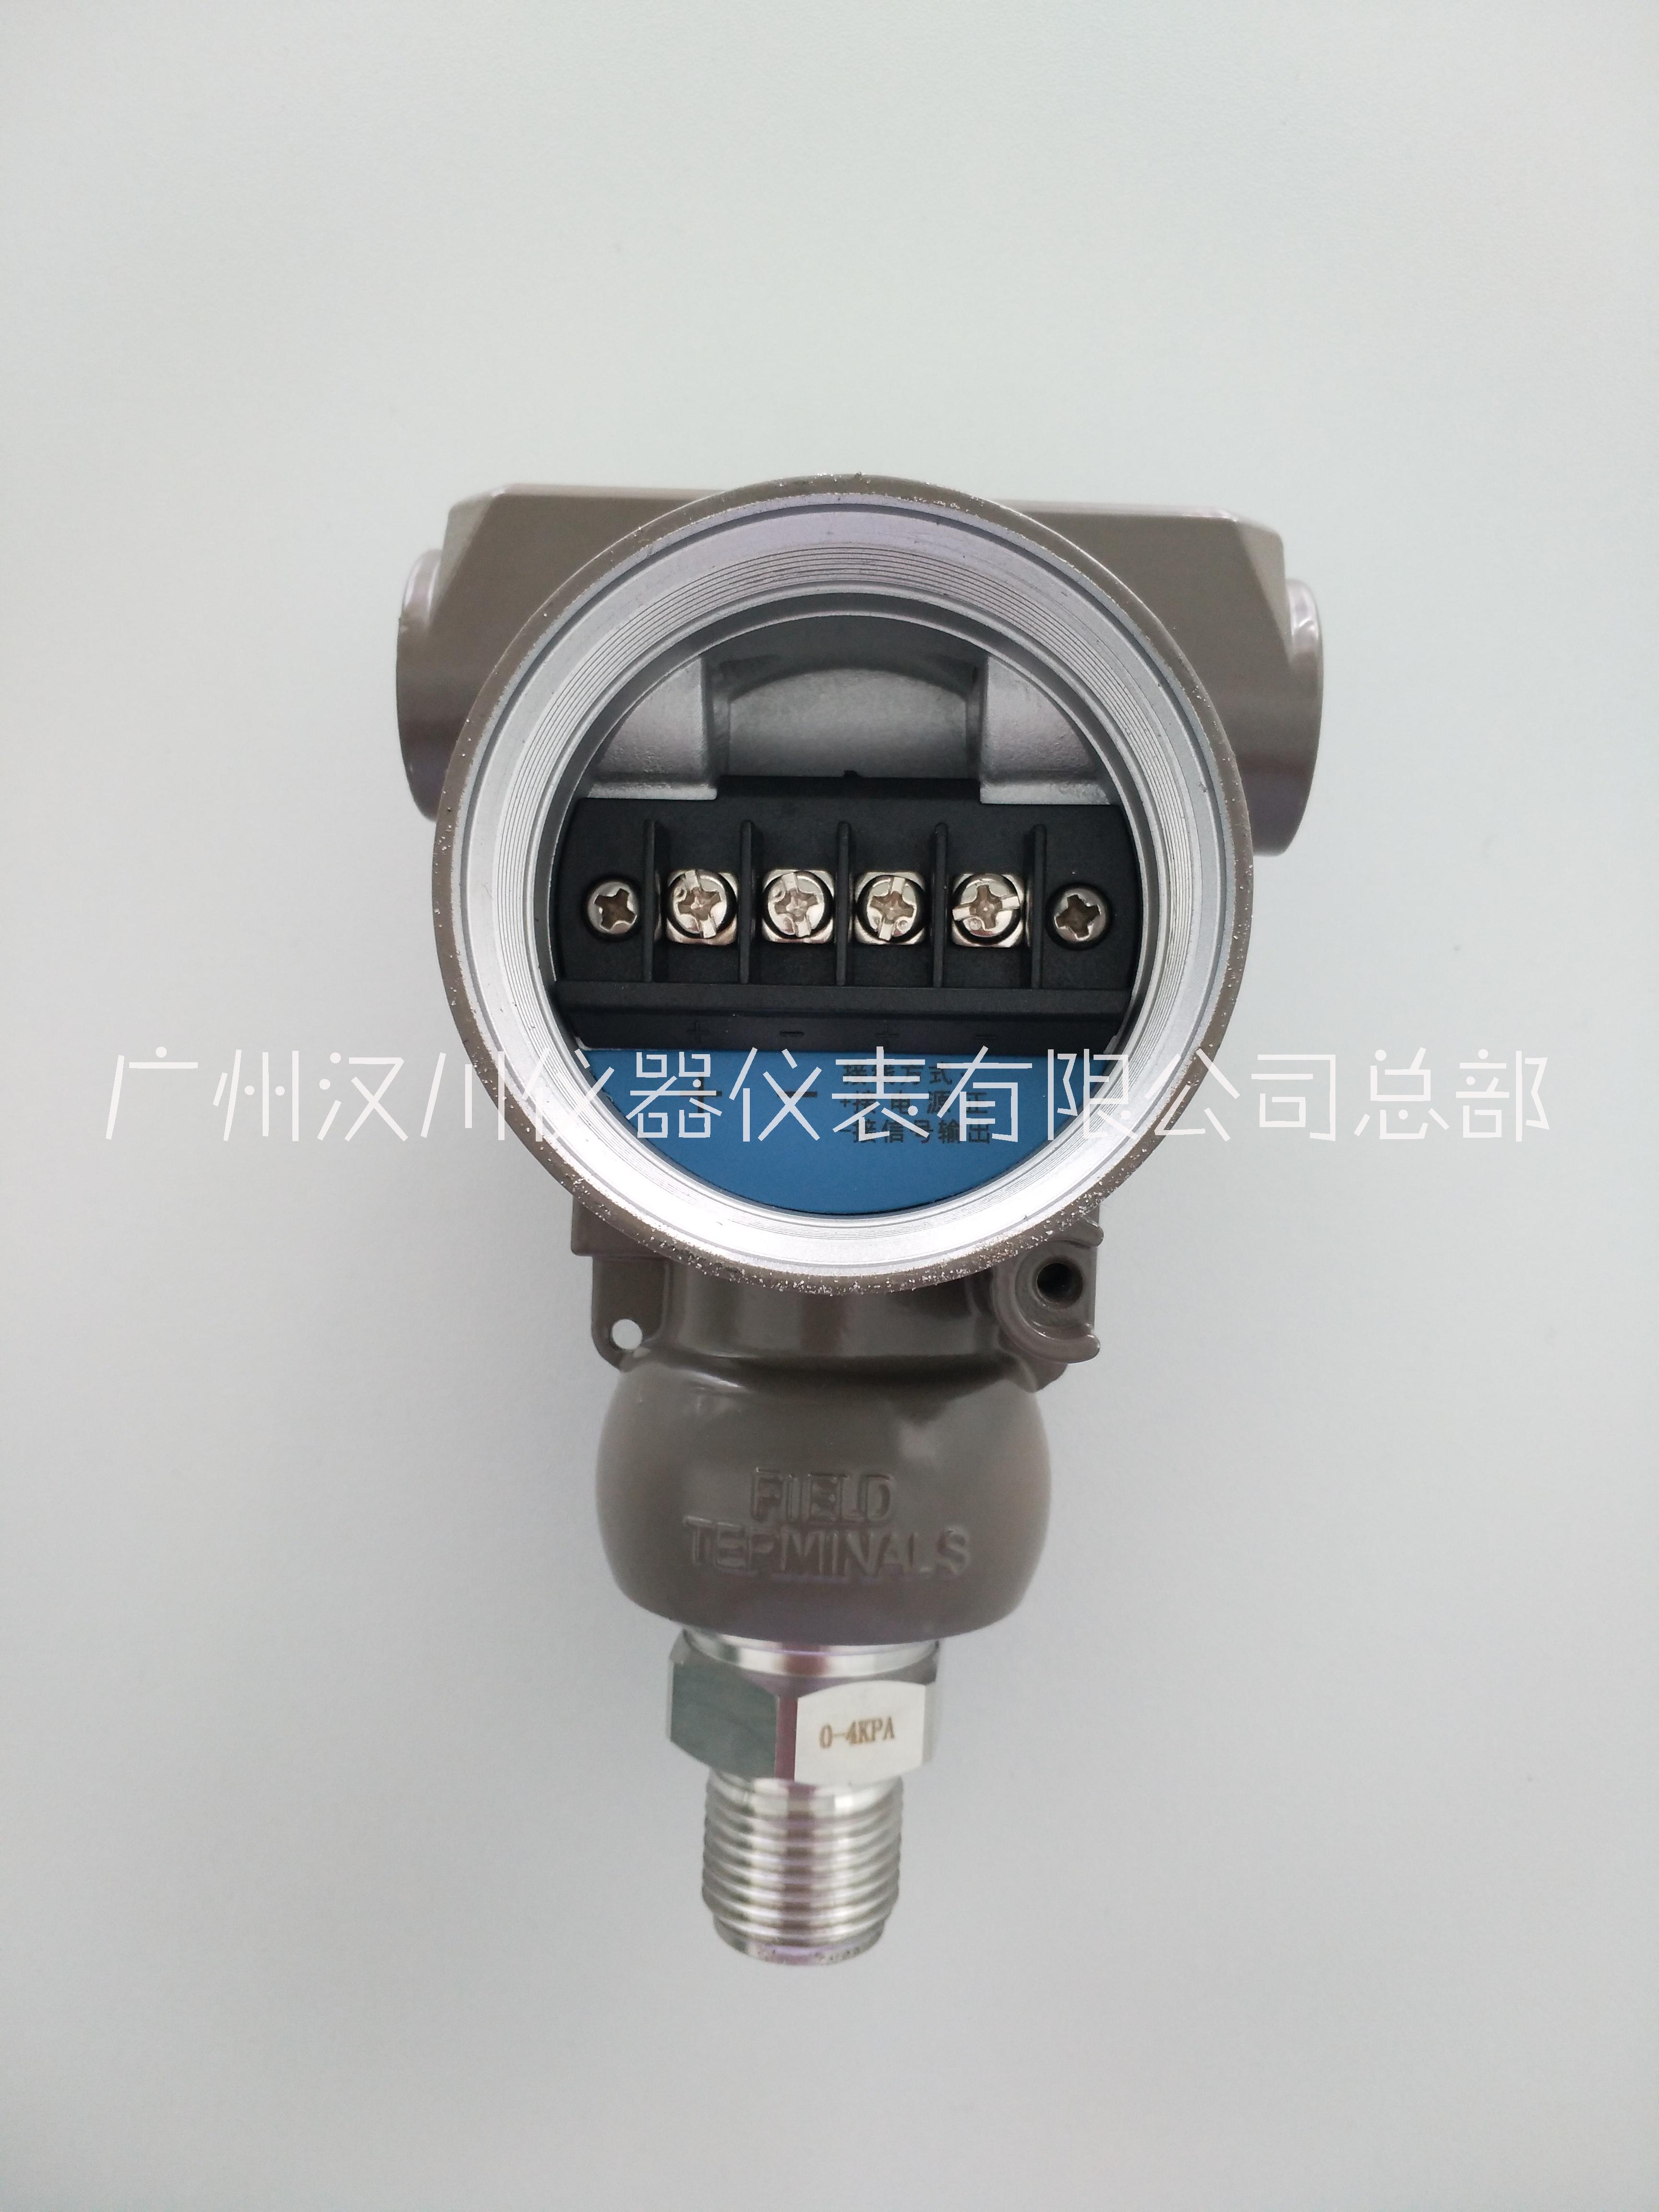 HC压力传感器  机械配套压力传感器  智能压力传感器图片